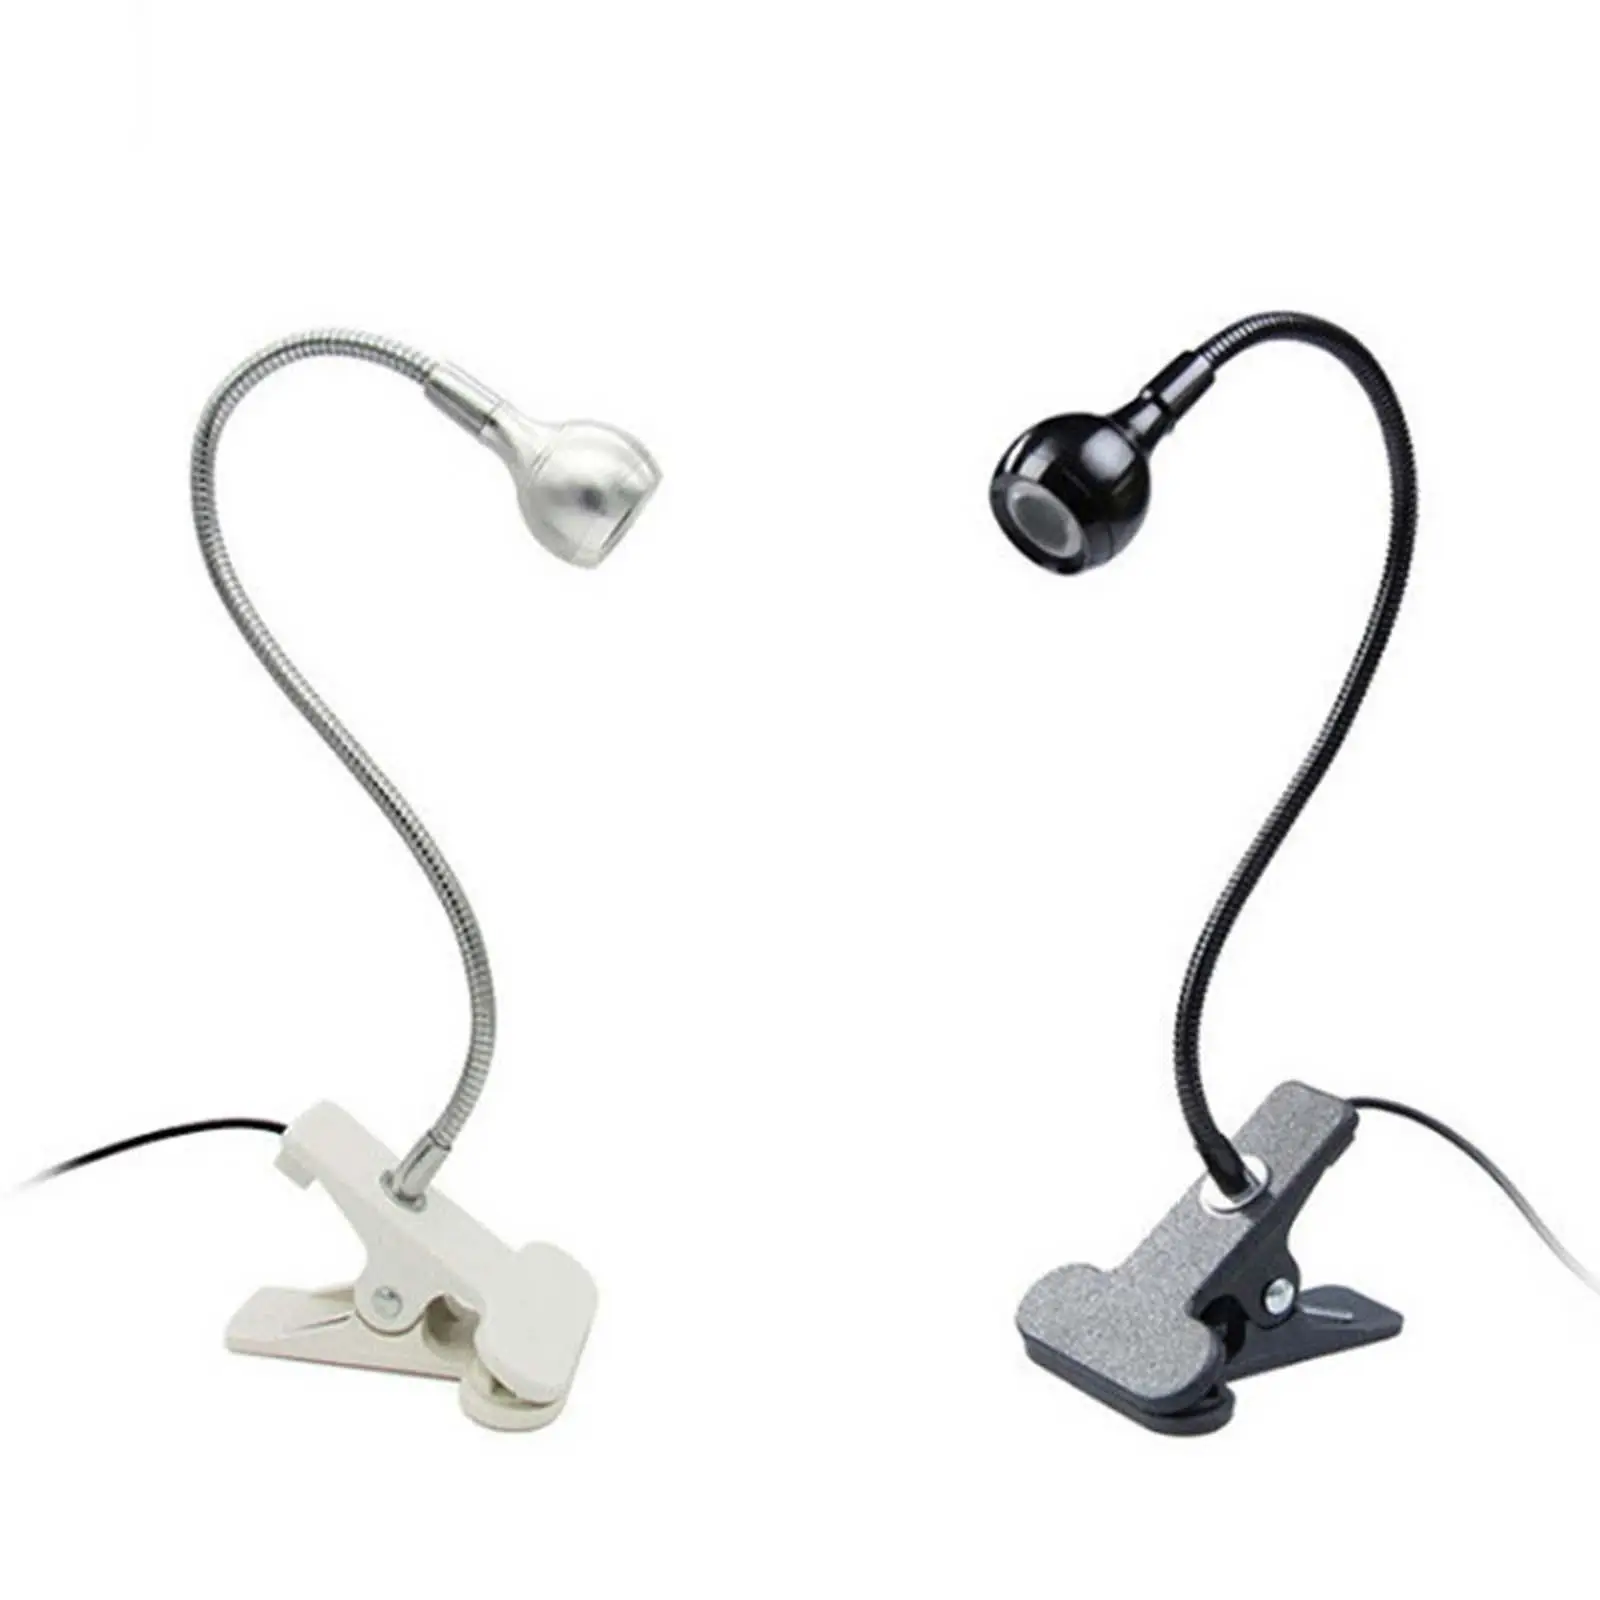 Desk UV LED Light Portable USB Charging Flexible Gooseneck Mini UV Curing Light Nail Lamp Dryer Light for Resin Art